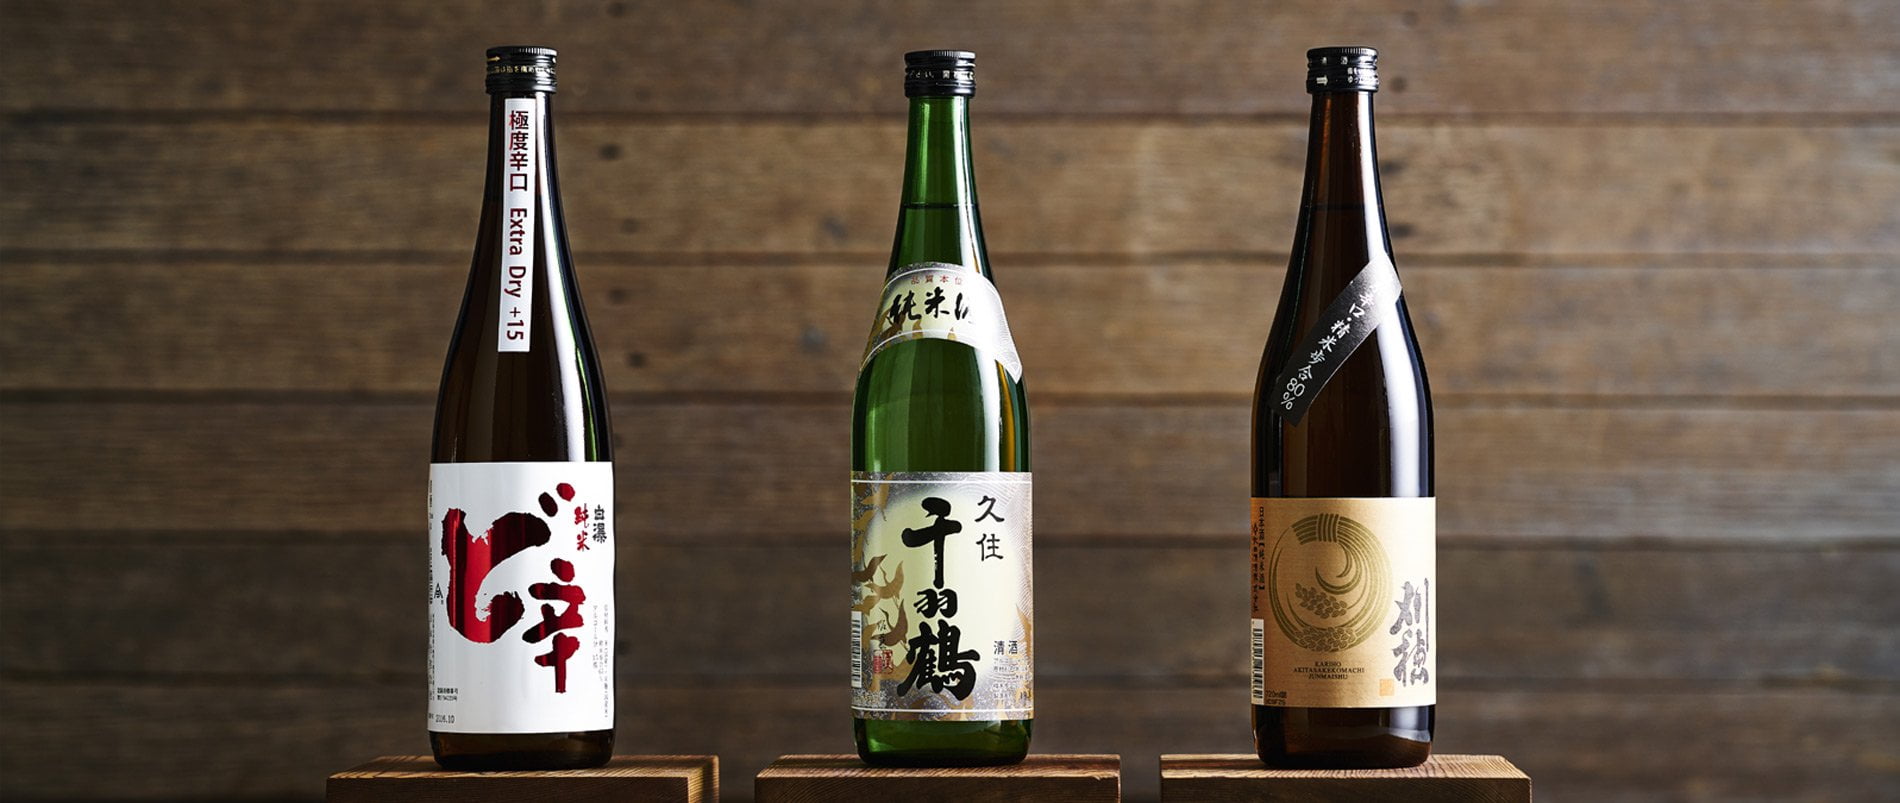 Tìm Hiểu Về Rượu Sake Nổi Tiếng Của Đất Nước Nhật Bản